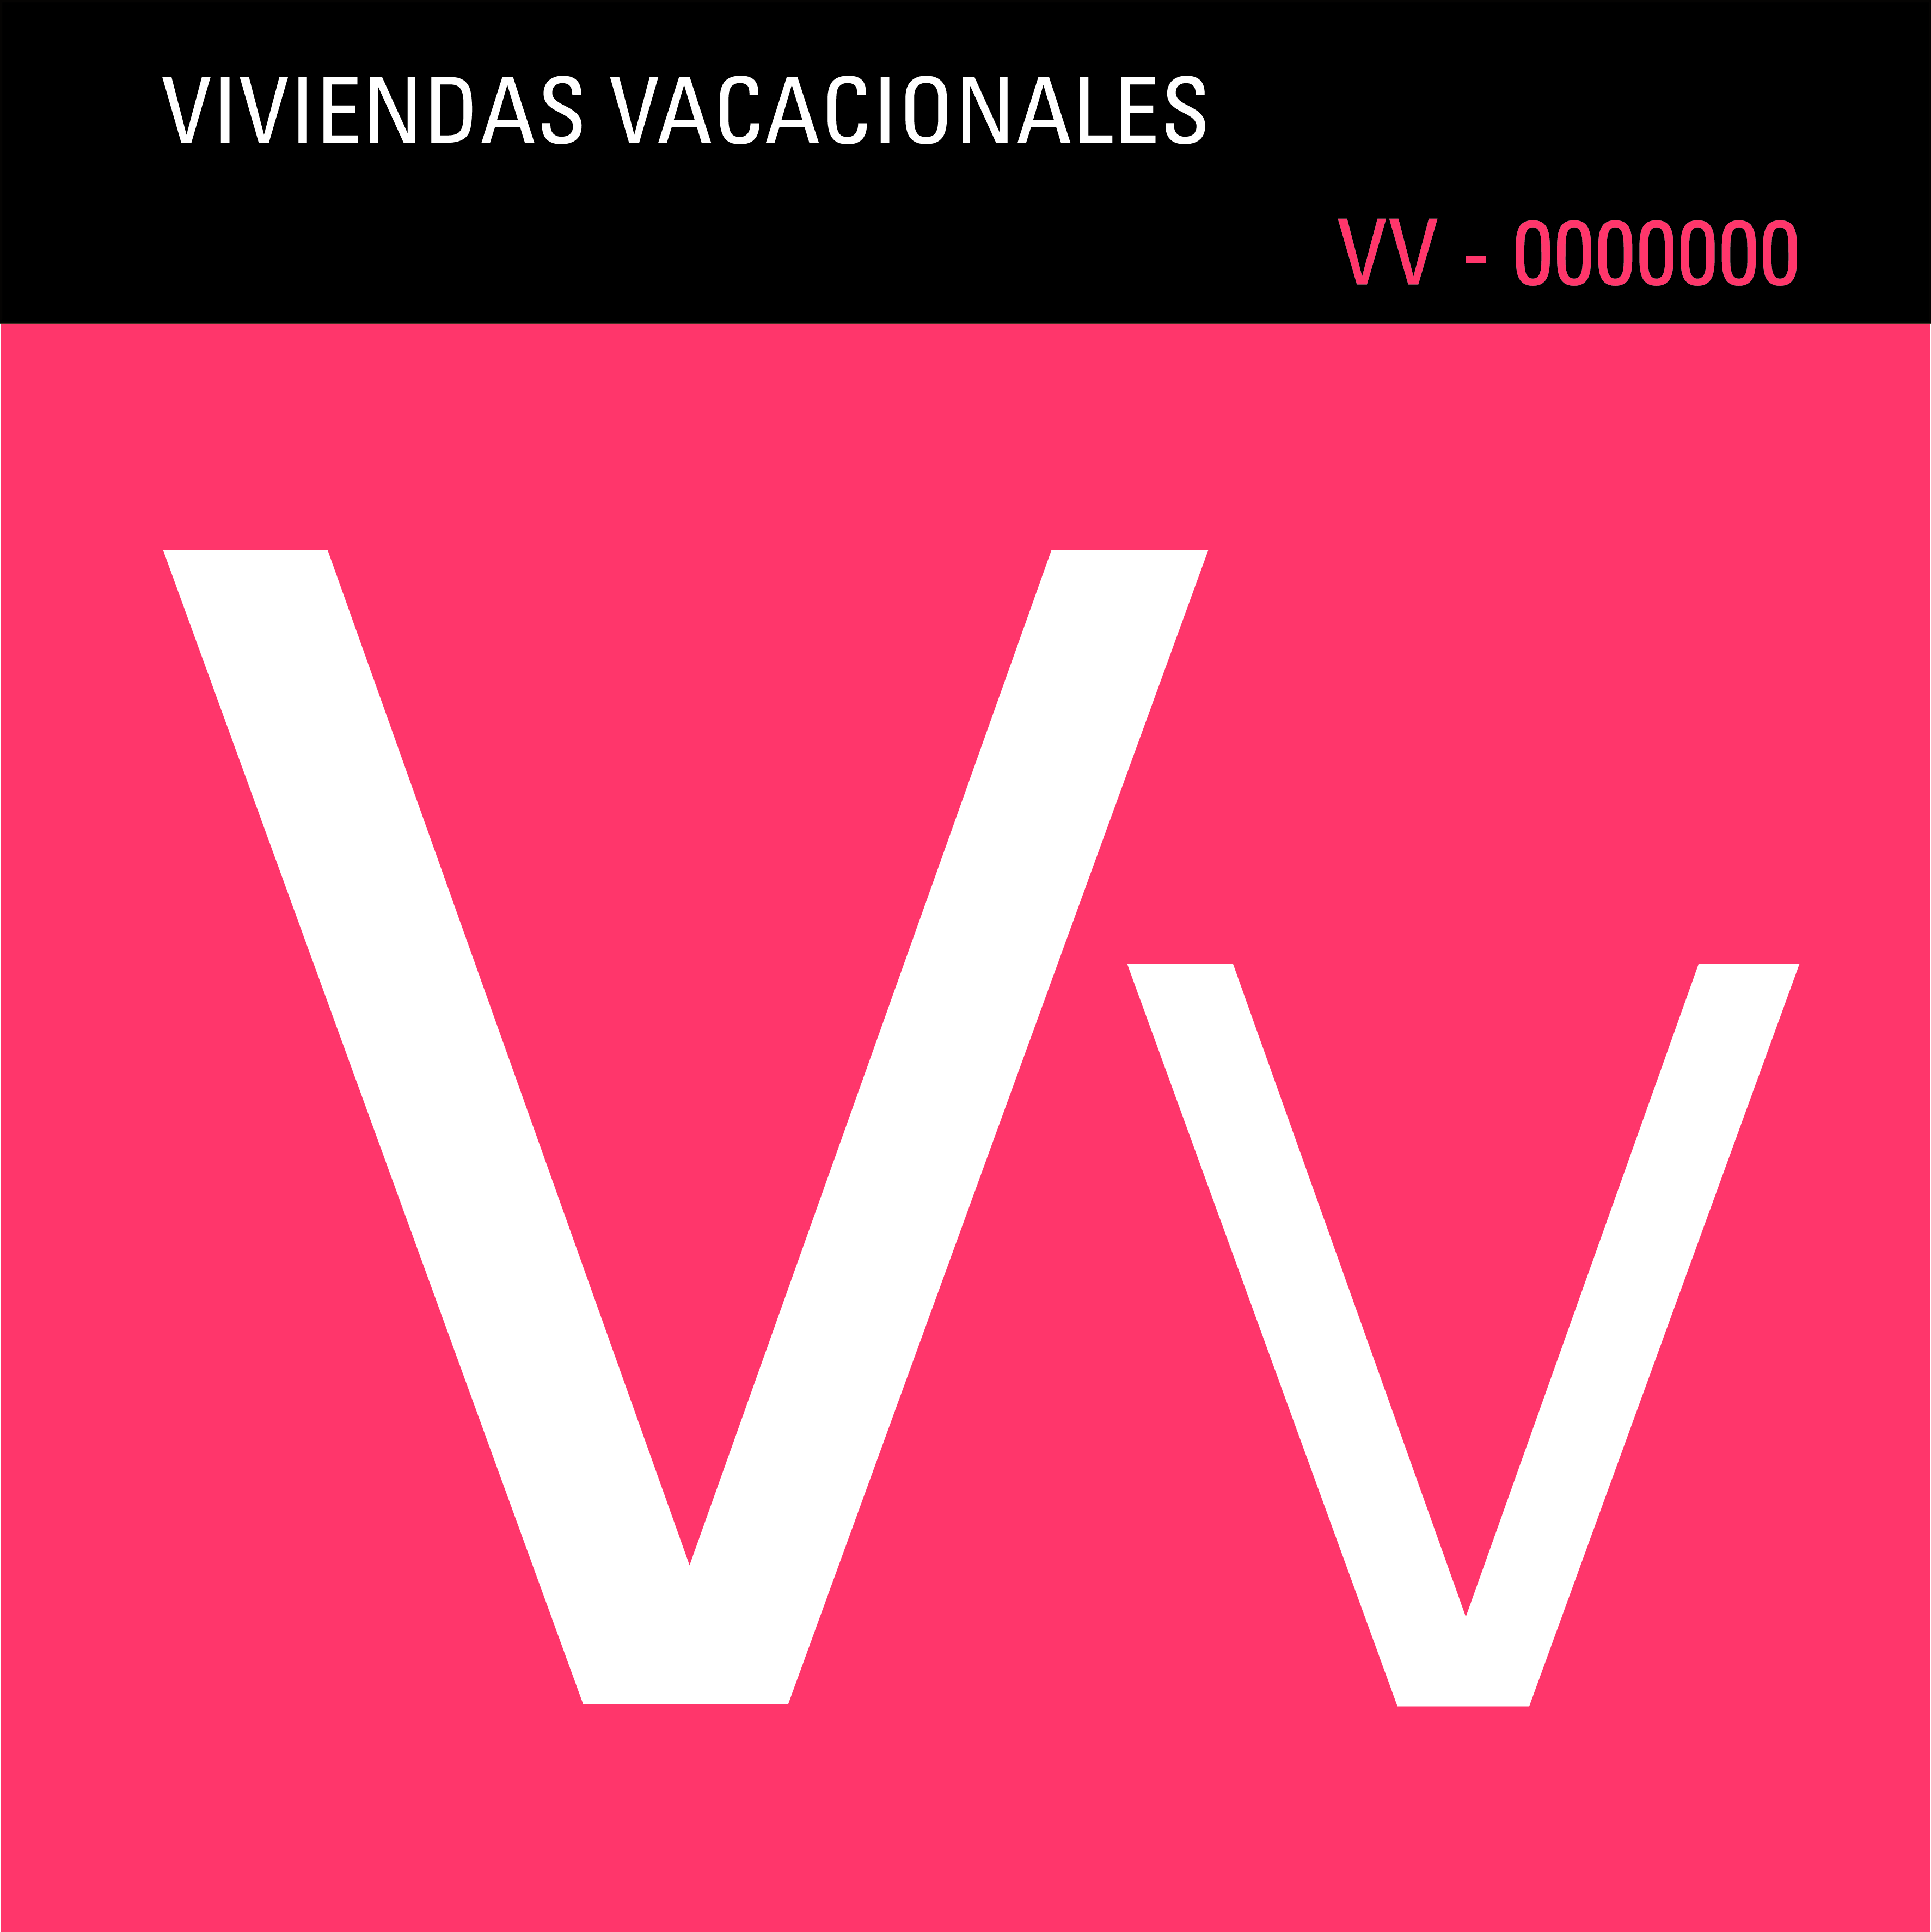 http://lpavisit.com/es/observatorio-turistico?download=167:listado-de-viviendas-vacacionales